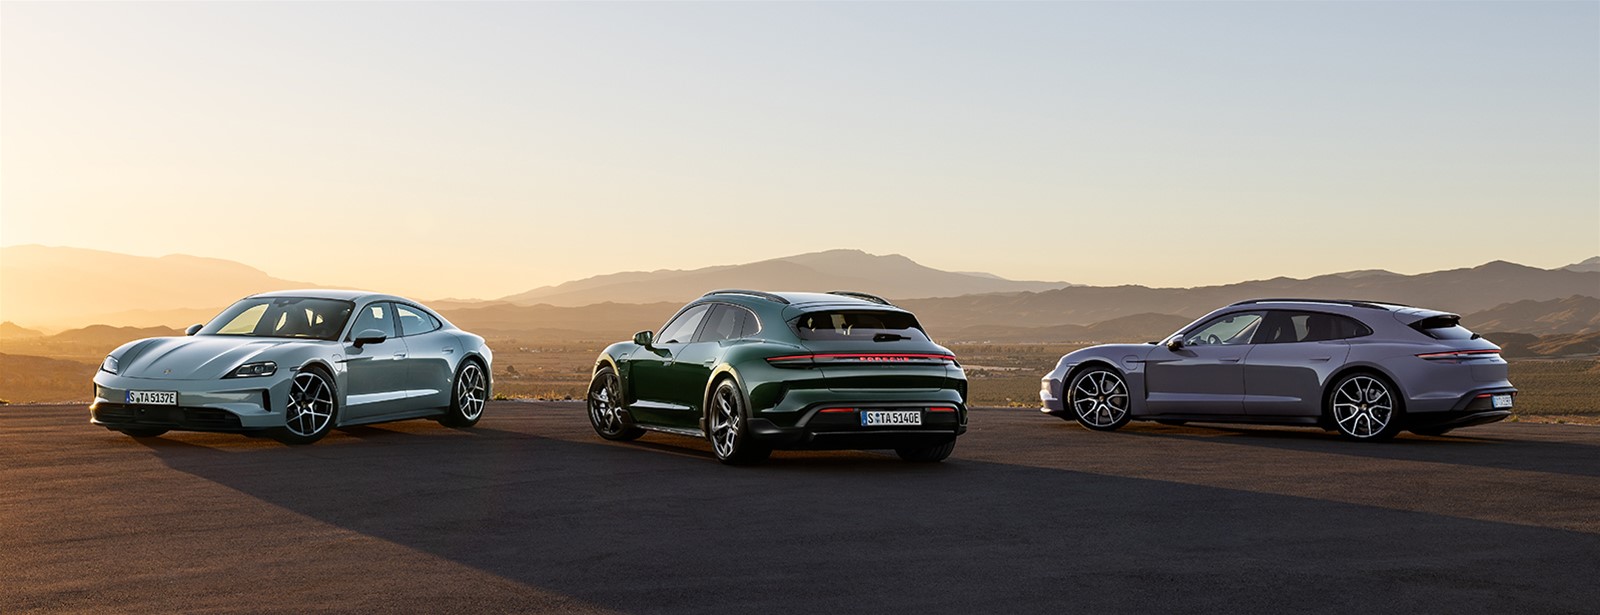 Porsche presenteert nieuwe Taycan met verbeterde prestaties.